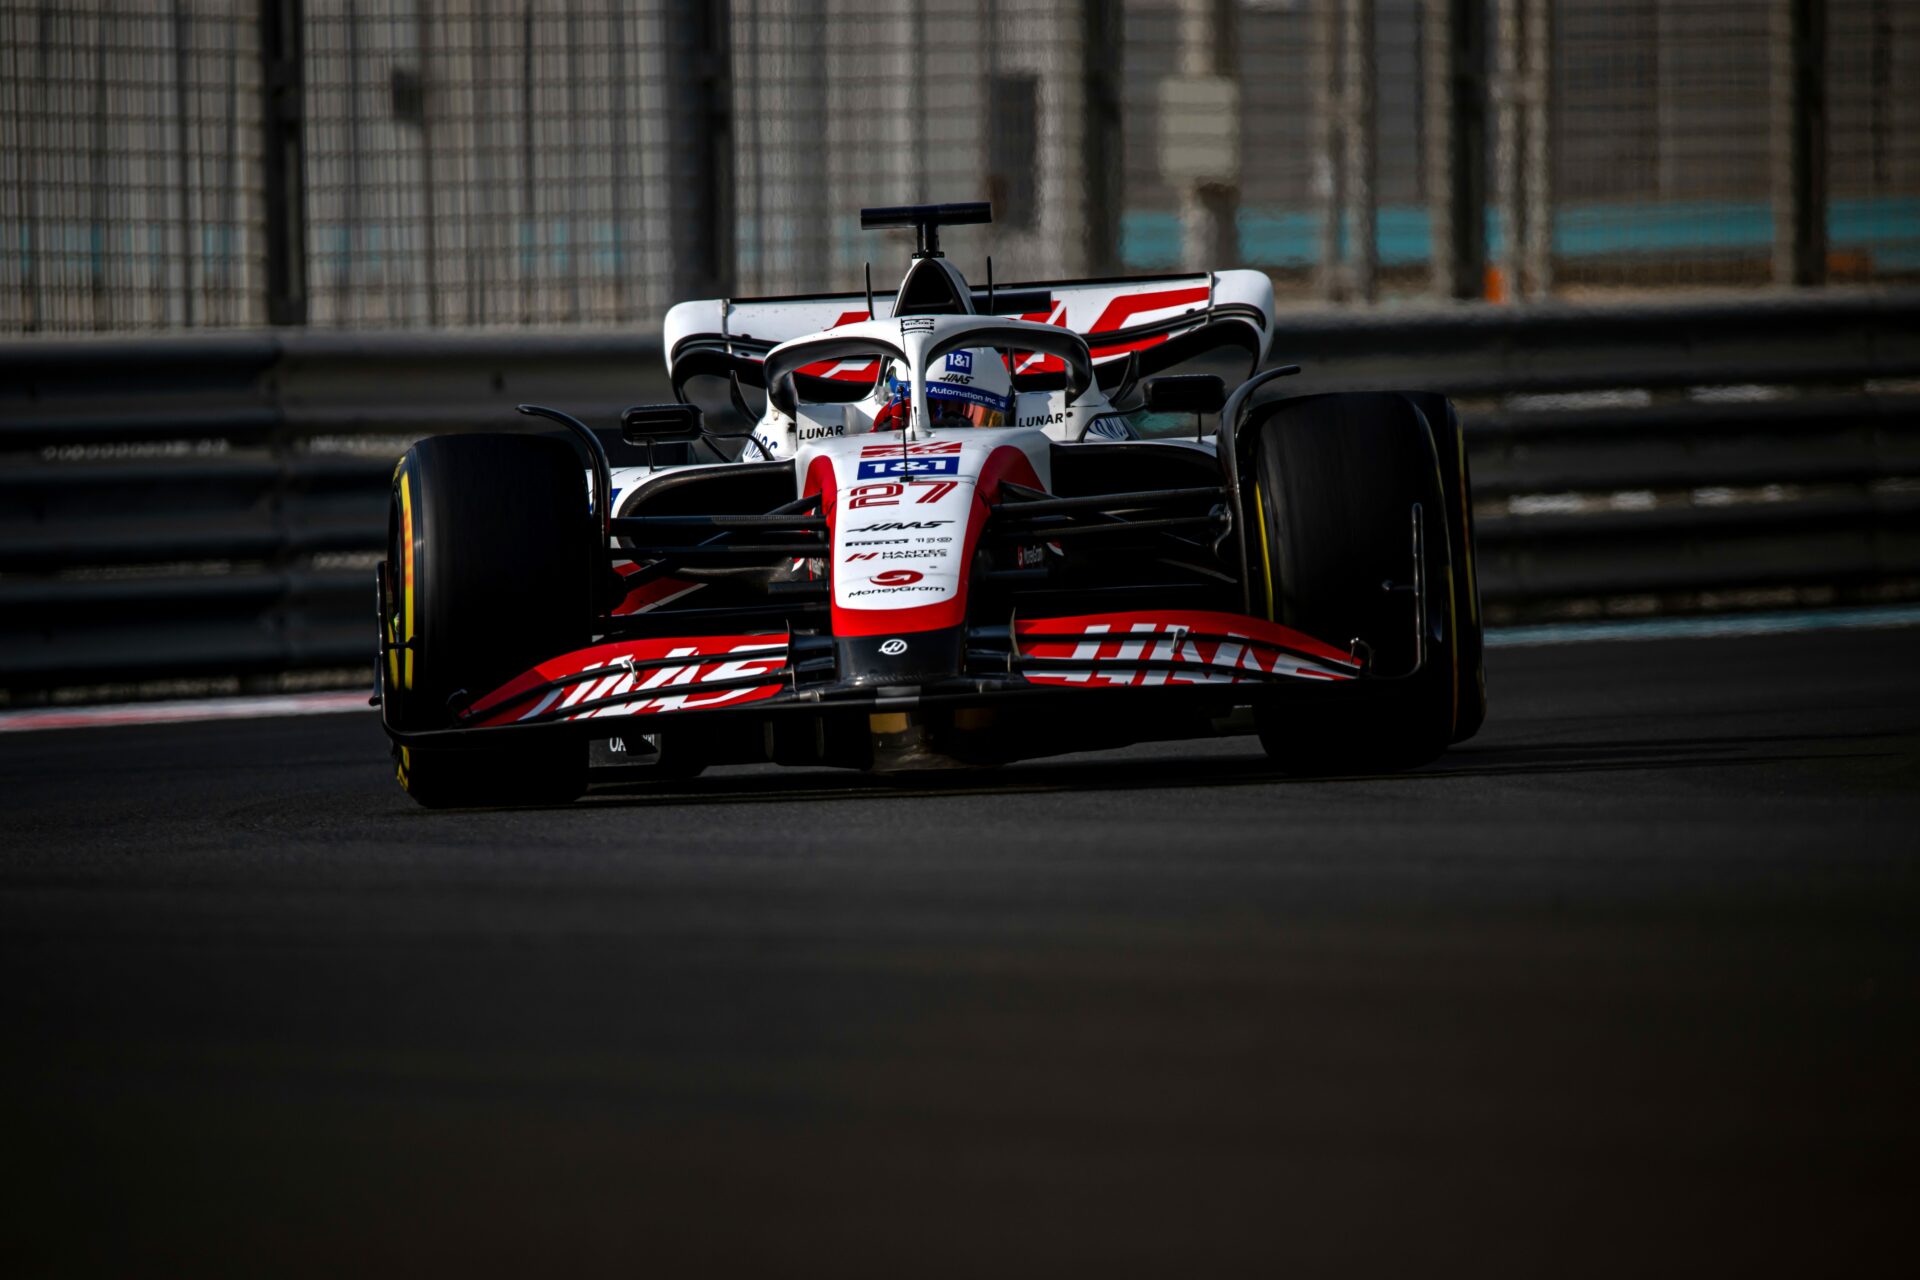 F1 - Premier roulage avec Haas pour Nico Hülkenberg ce mardi